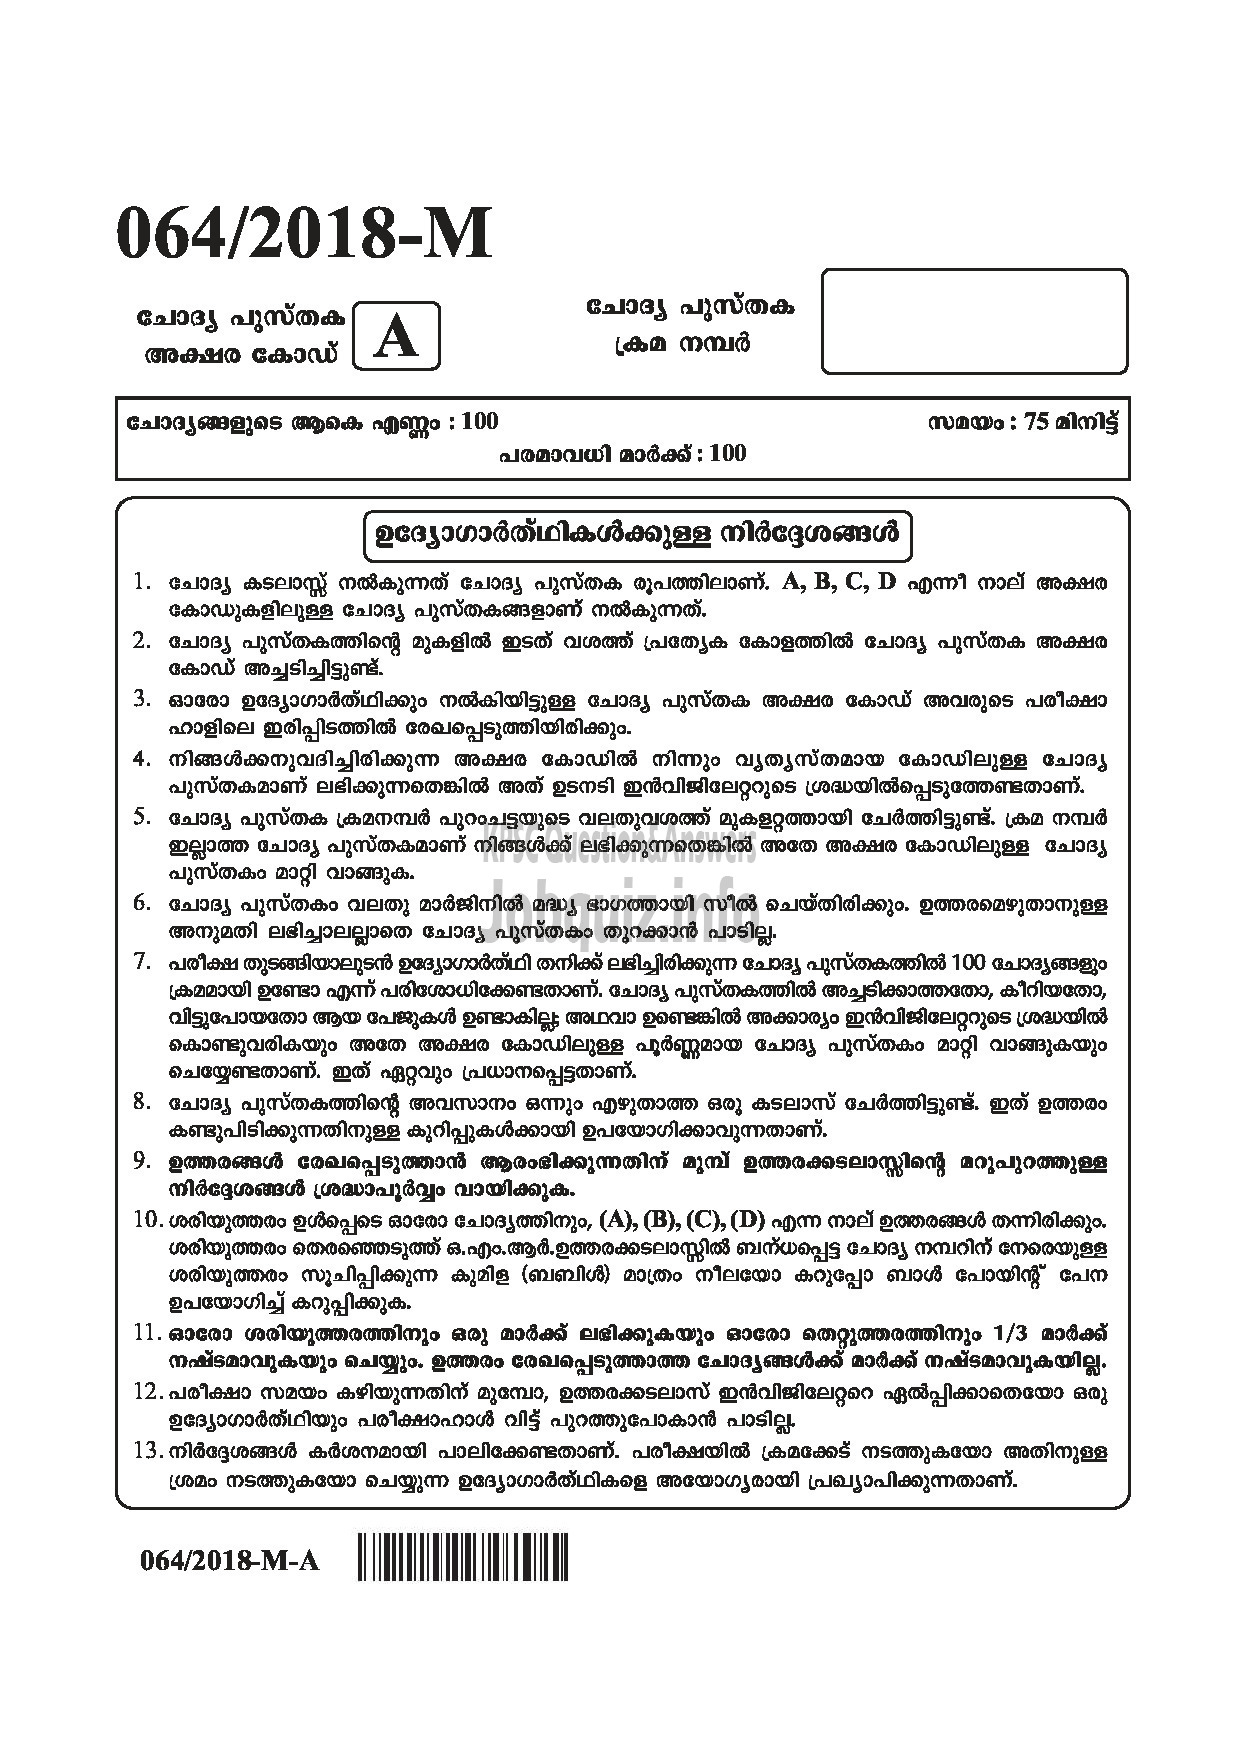 Kerala PSC Question Paper - LAST GRADE SERVANTS EXSERVICEMAN NCC SAINIK WELFARE-1